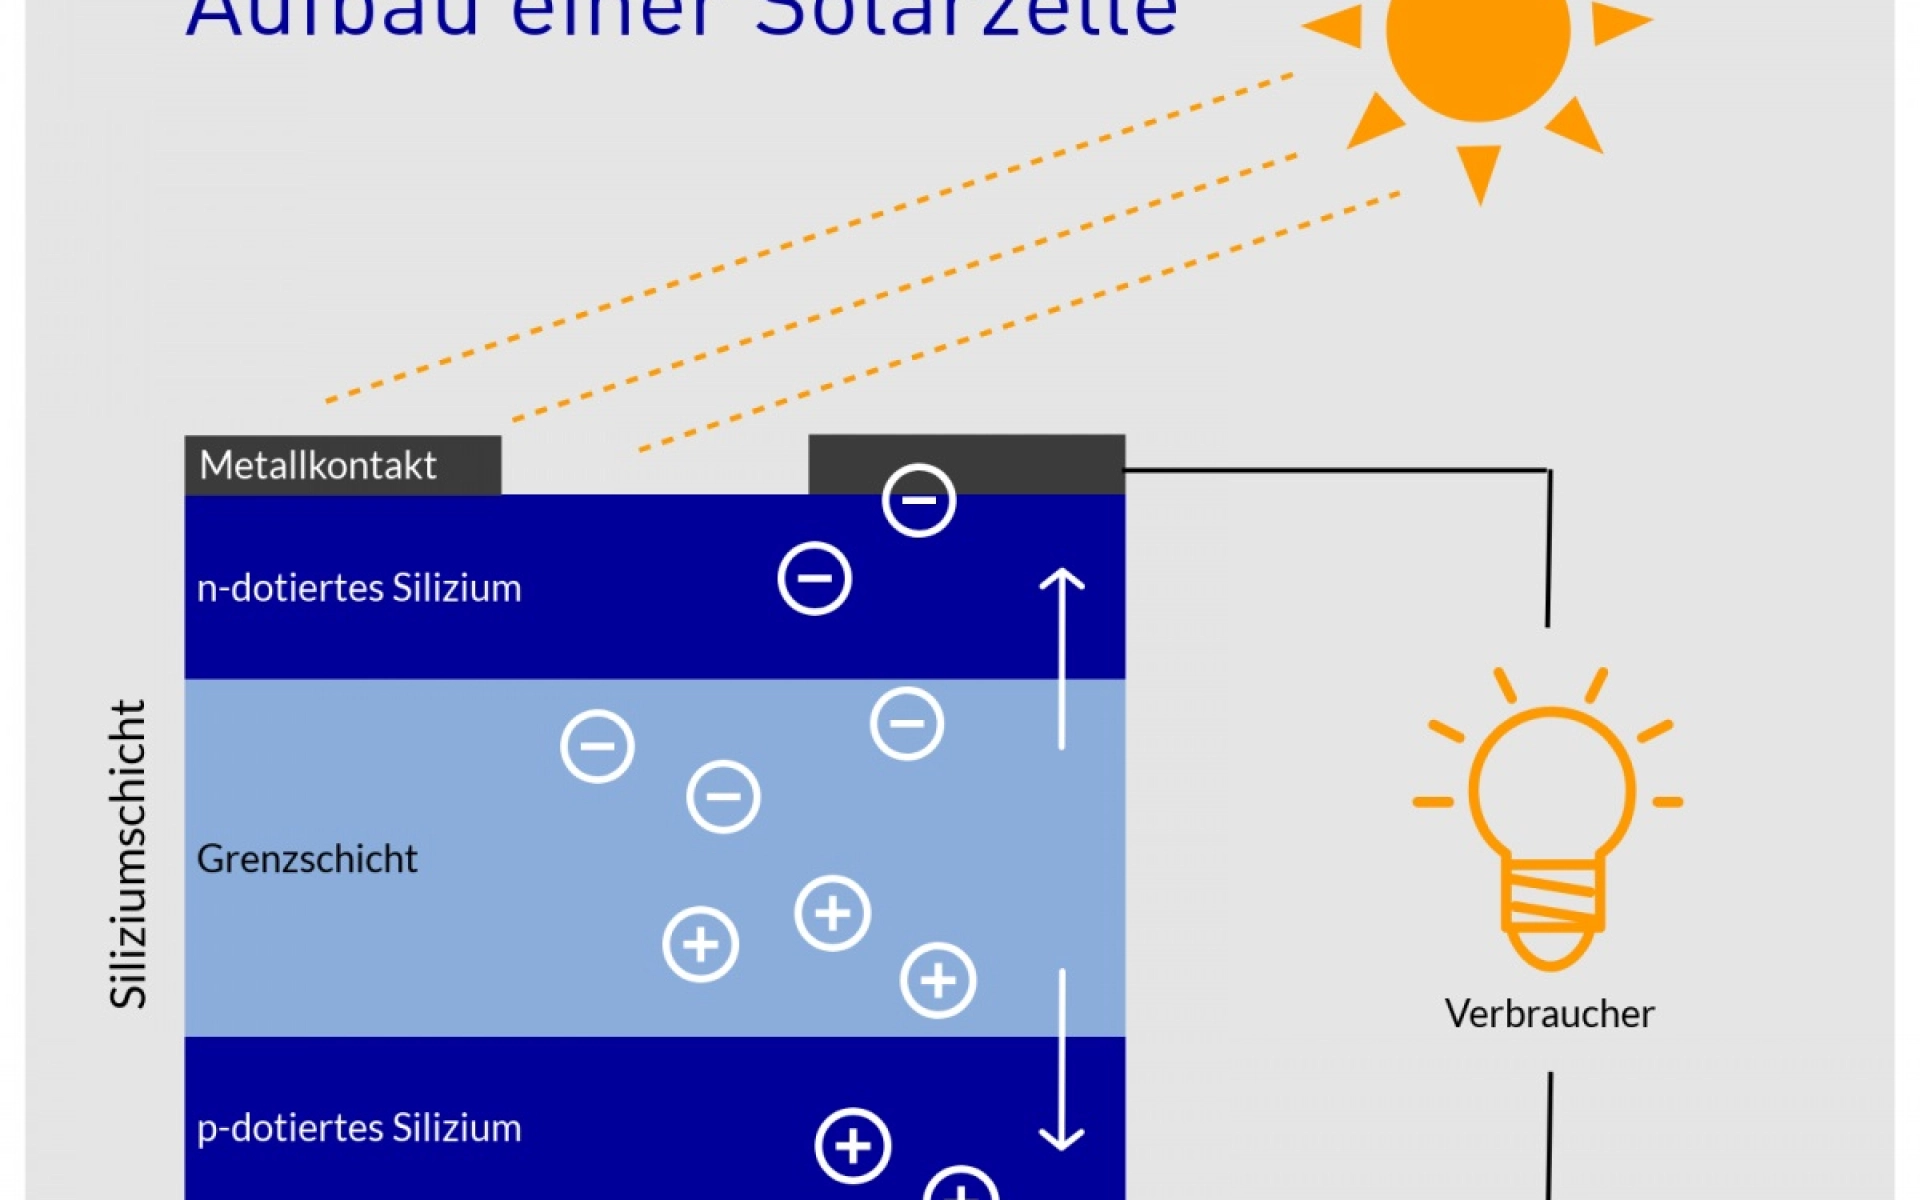 Der Aufbau einer Solarzelle aus Silizium mit verschiedener Schichtung von n-dotiertem Silizium und p-dotiertem Silizium und Metallkontakten. Durch Sonneneinstrahlung entsteht dann Strom. 